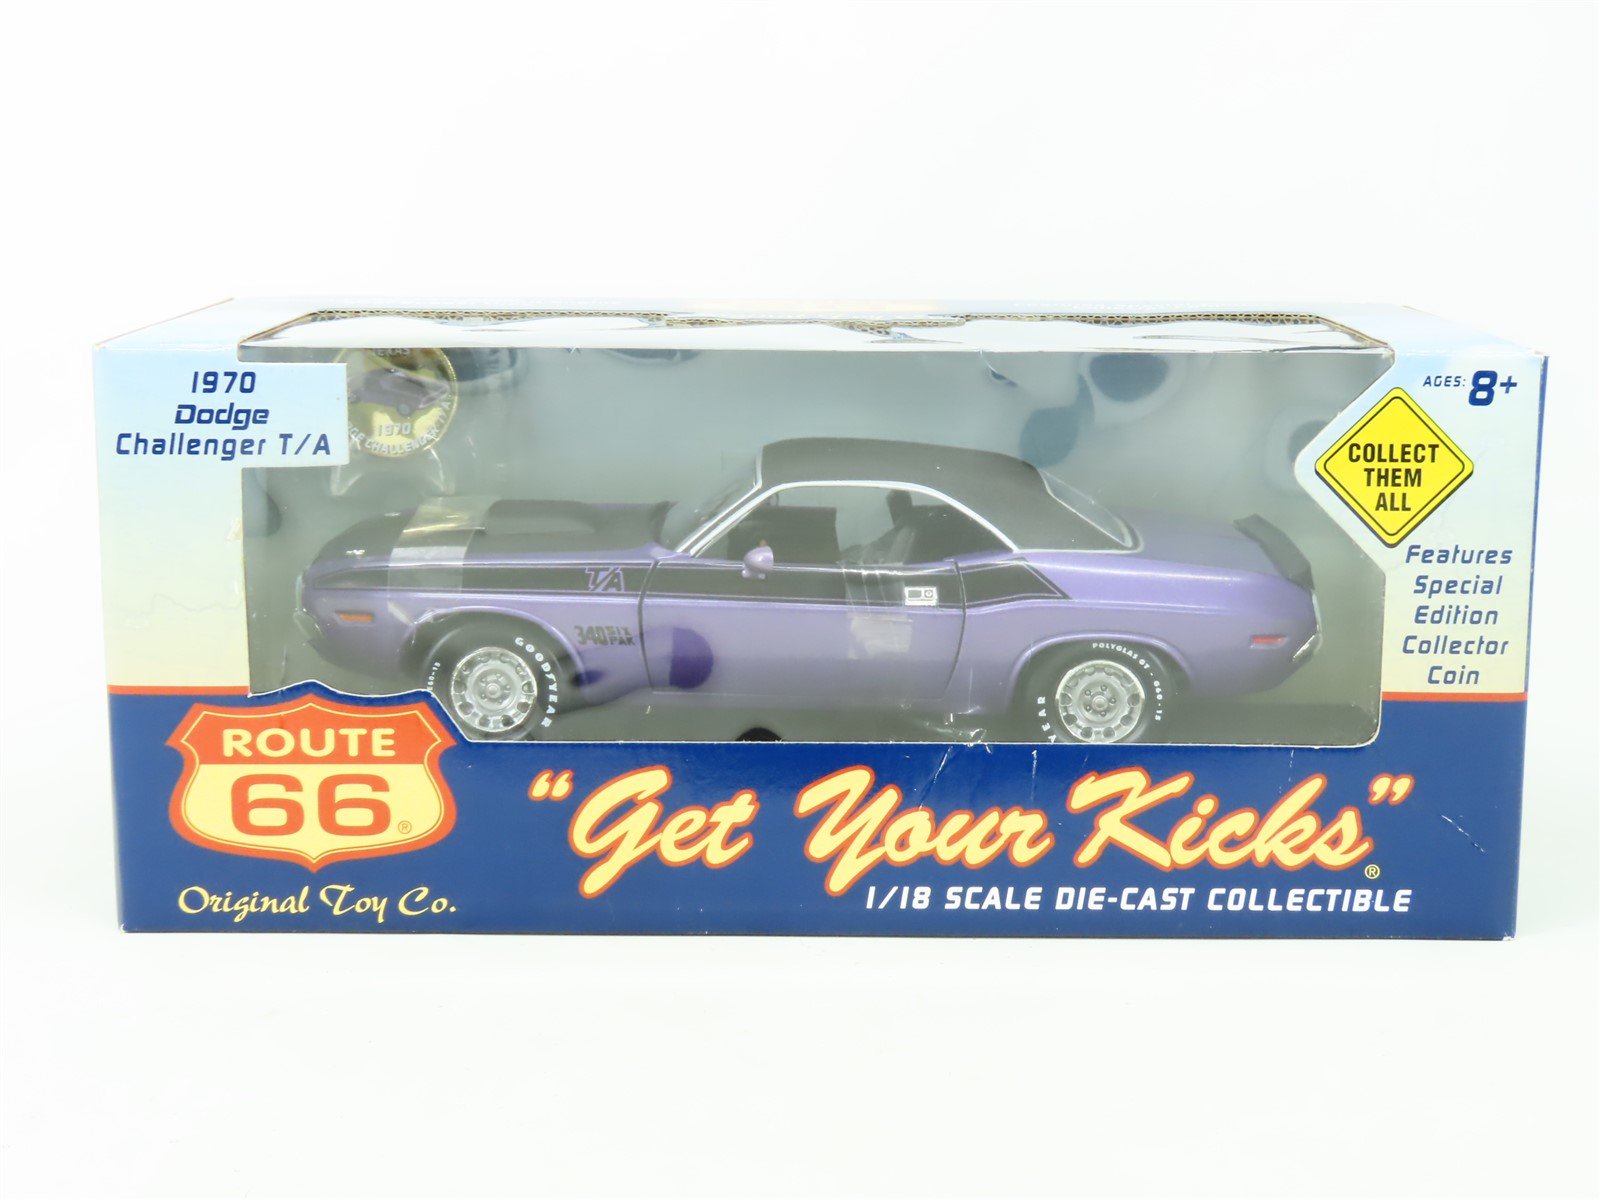 1:18 Scale Original Toy Co. Route 66 1970 Dodge Challenger T/A - Purple/Black